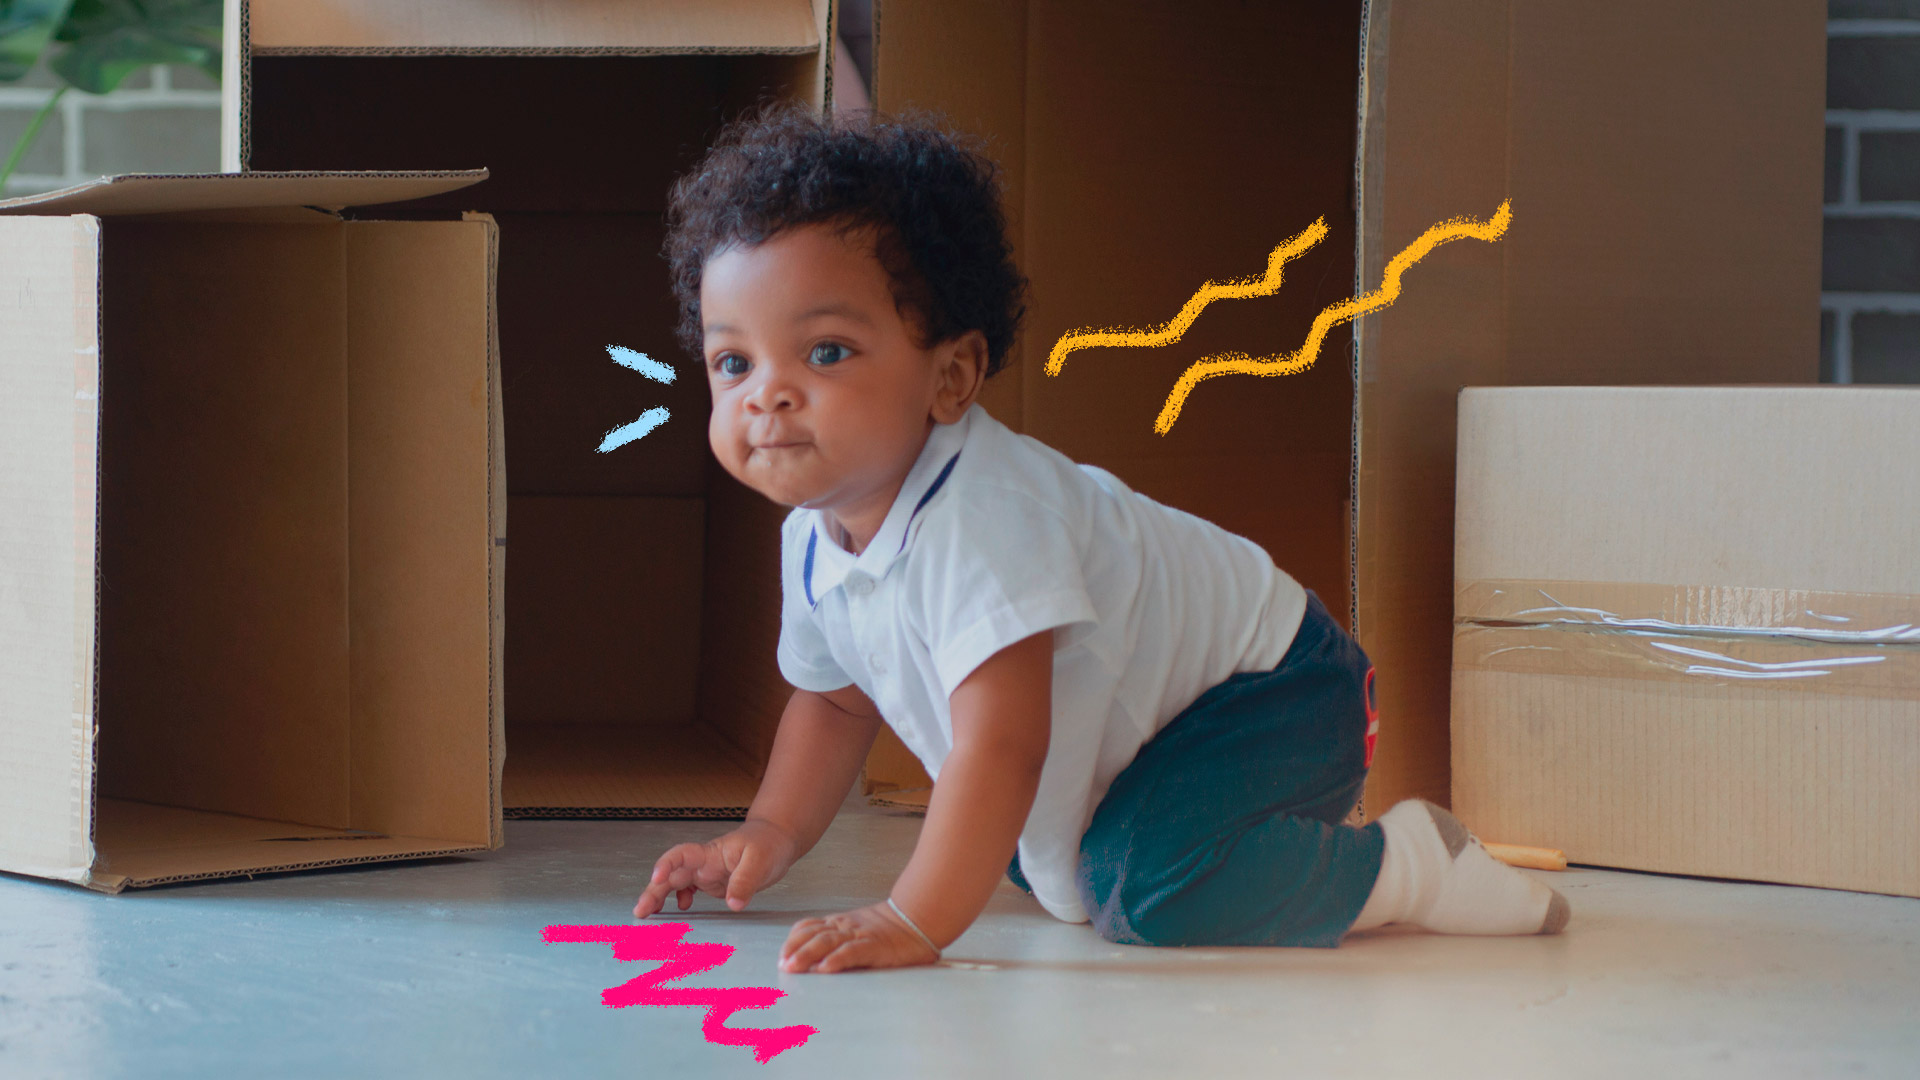 Imagem de um bebê negro engatinhando próximo de caixas de papelão que estão no chão. Ele usa camiseta branca, calça e meias.